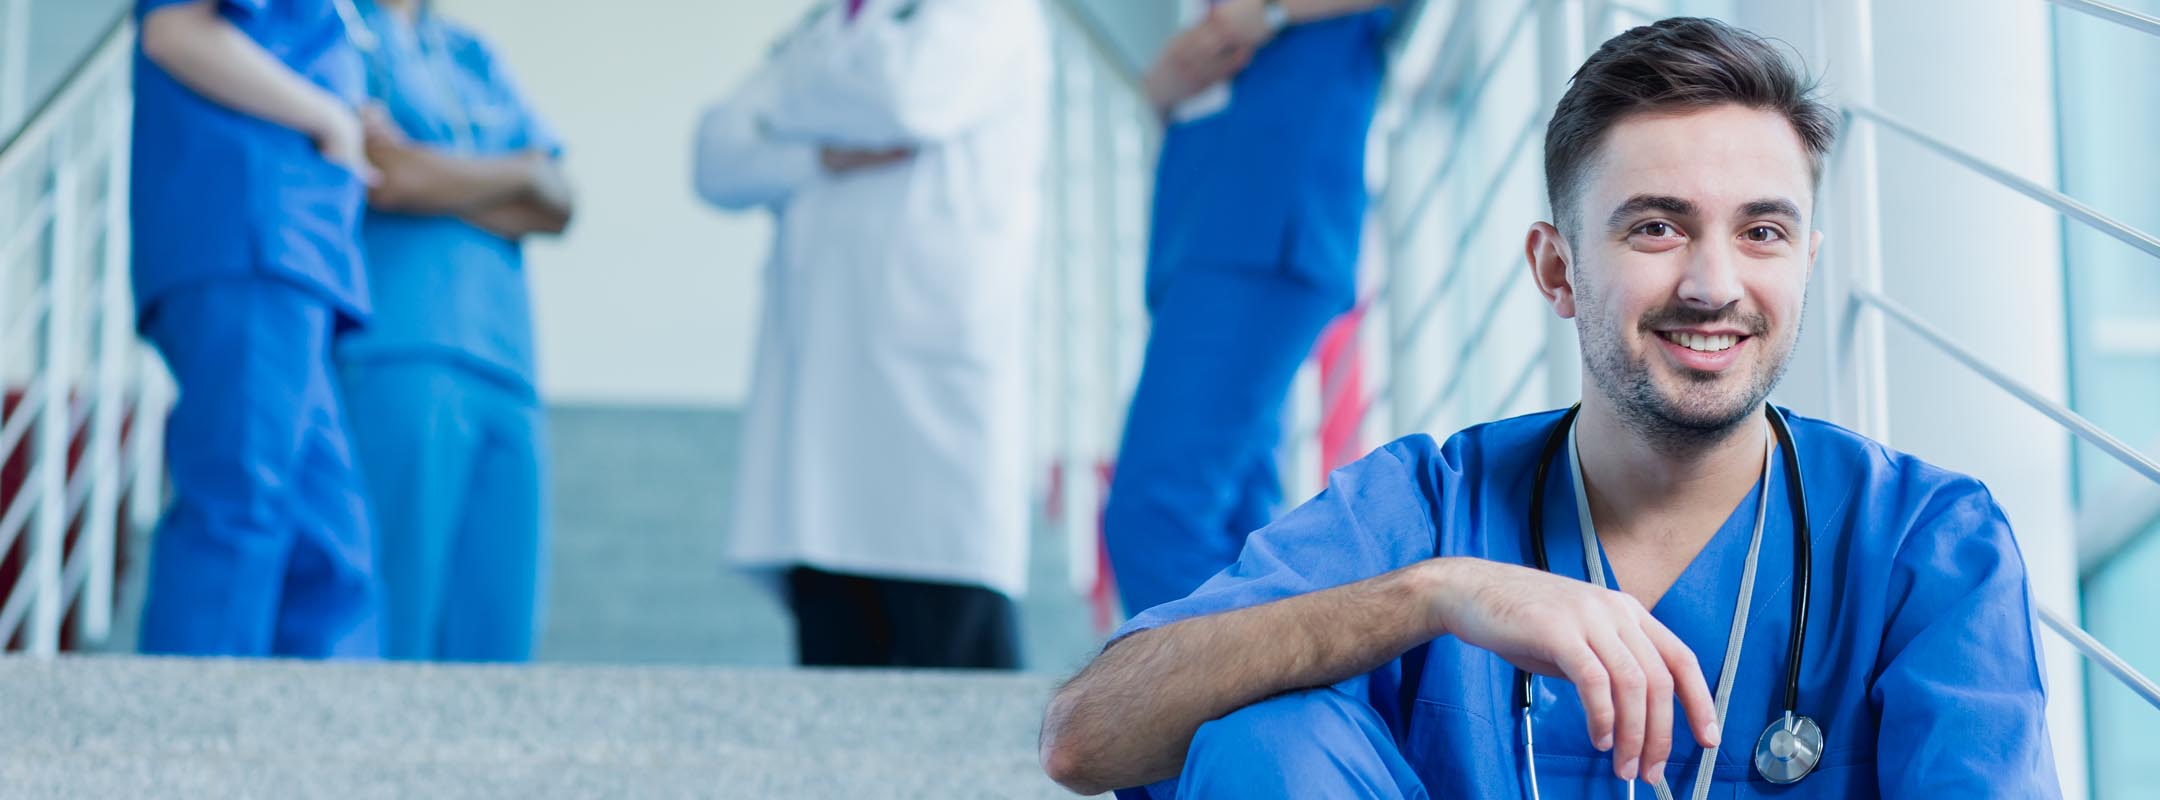 Ein männlicher Pfleger sitzt auf einer Treppe, im Hintergrund sieht man einen Arzt und weitere Pflegekräfte.